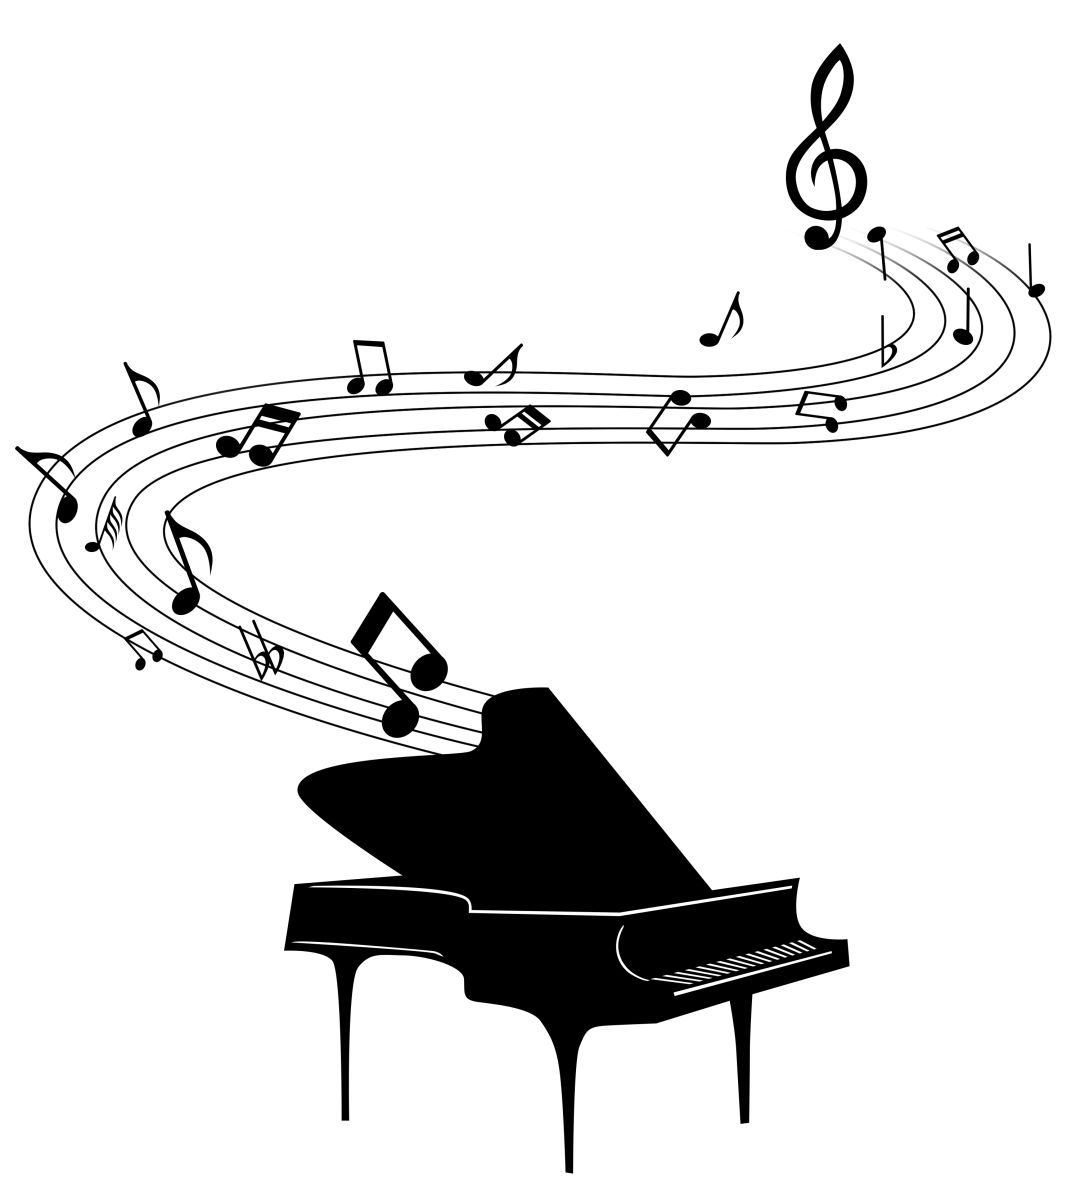 音乐会预告||慧悦学员赴墨尔本国际钢琴大赛预演音乐会